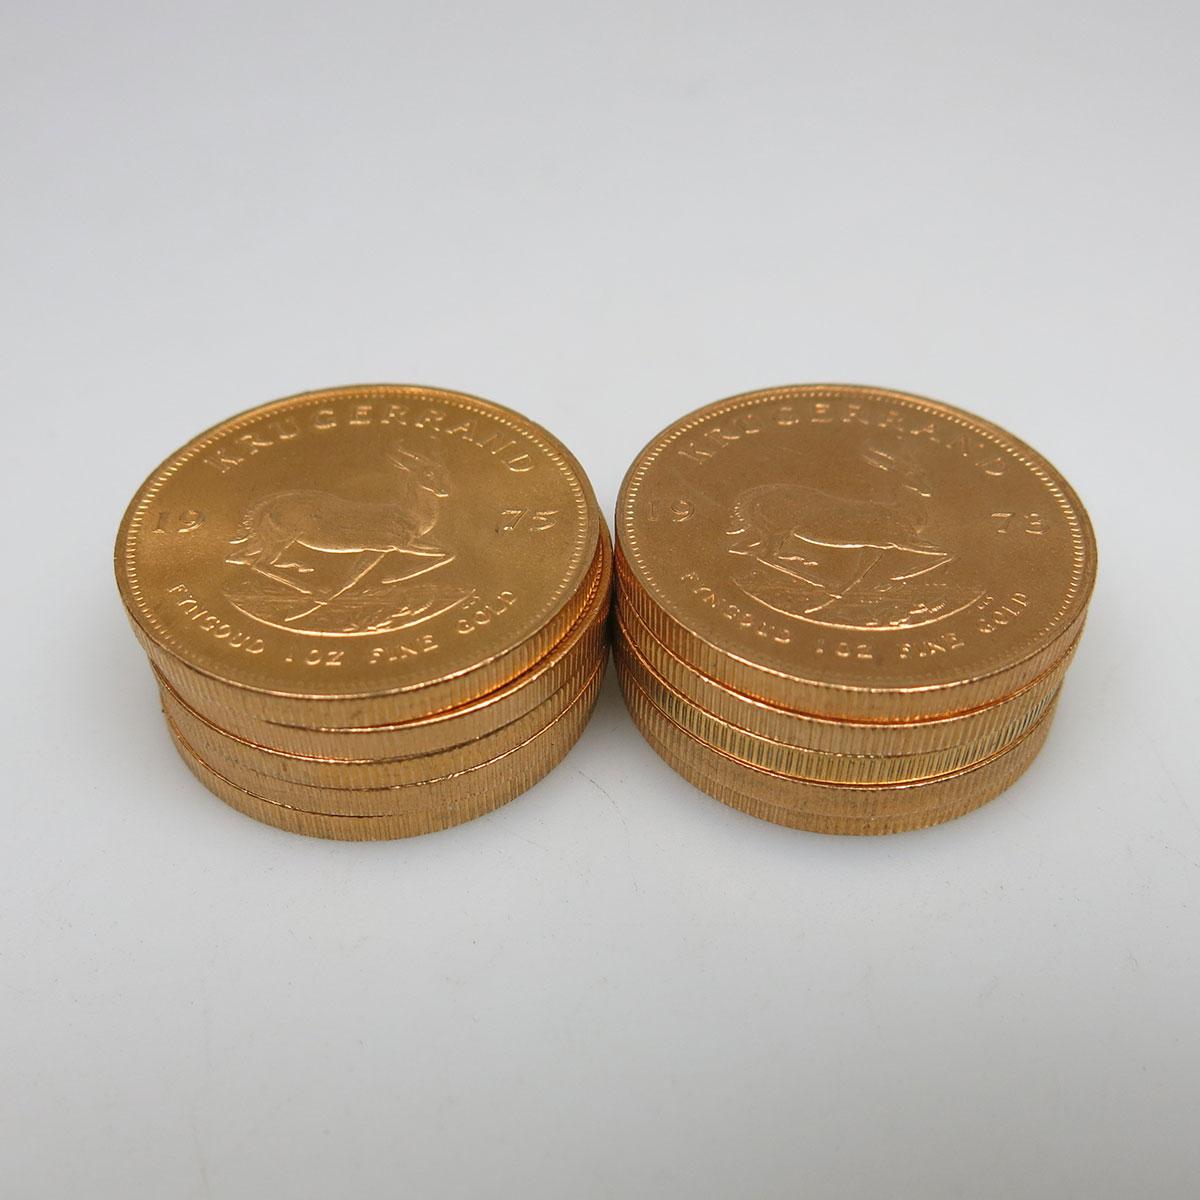 10 Krugerrand Gold Coins